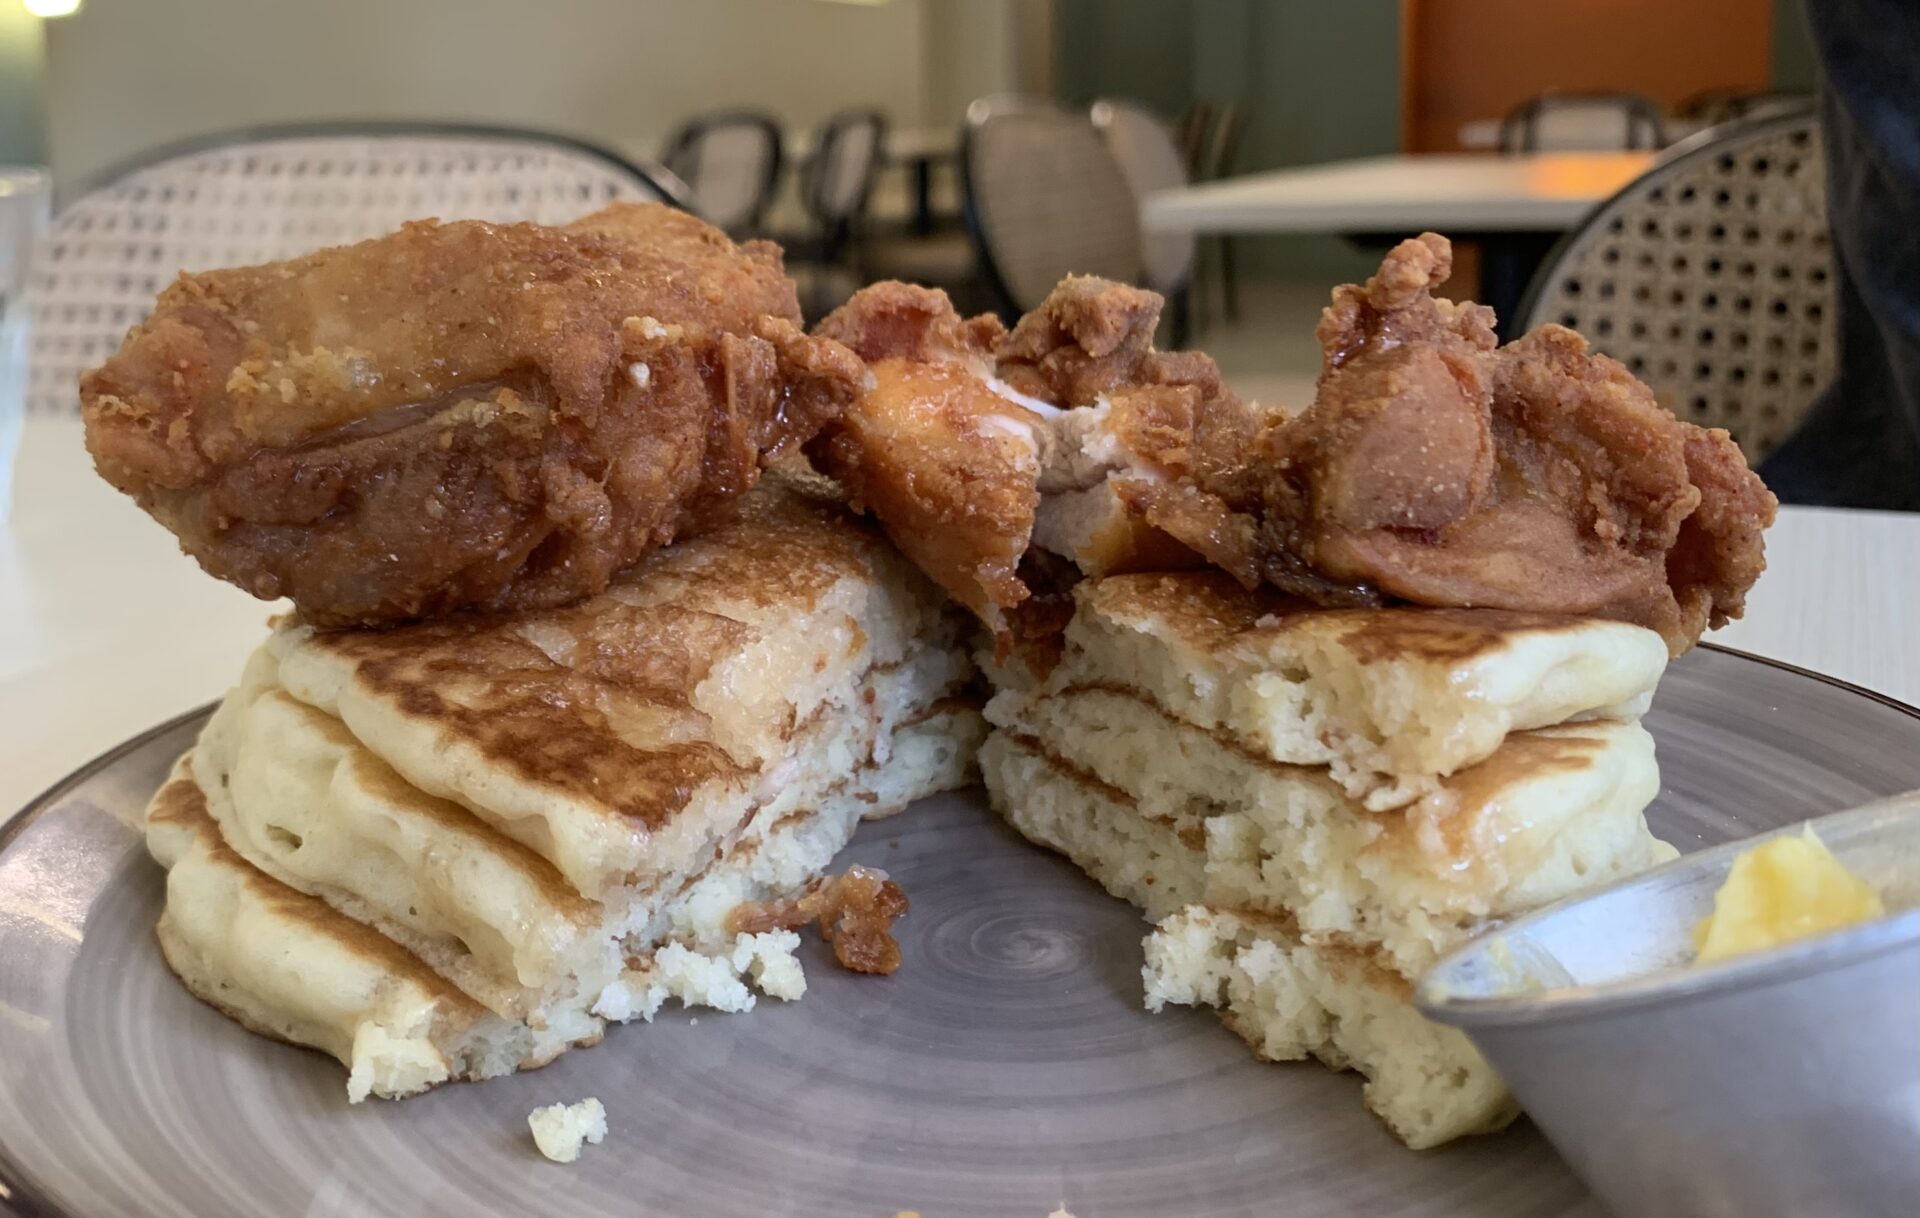 Ayamguys - Ayamguys pancakes cut to reveal layers